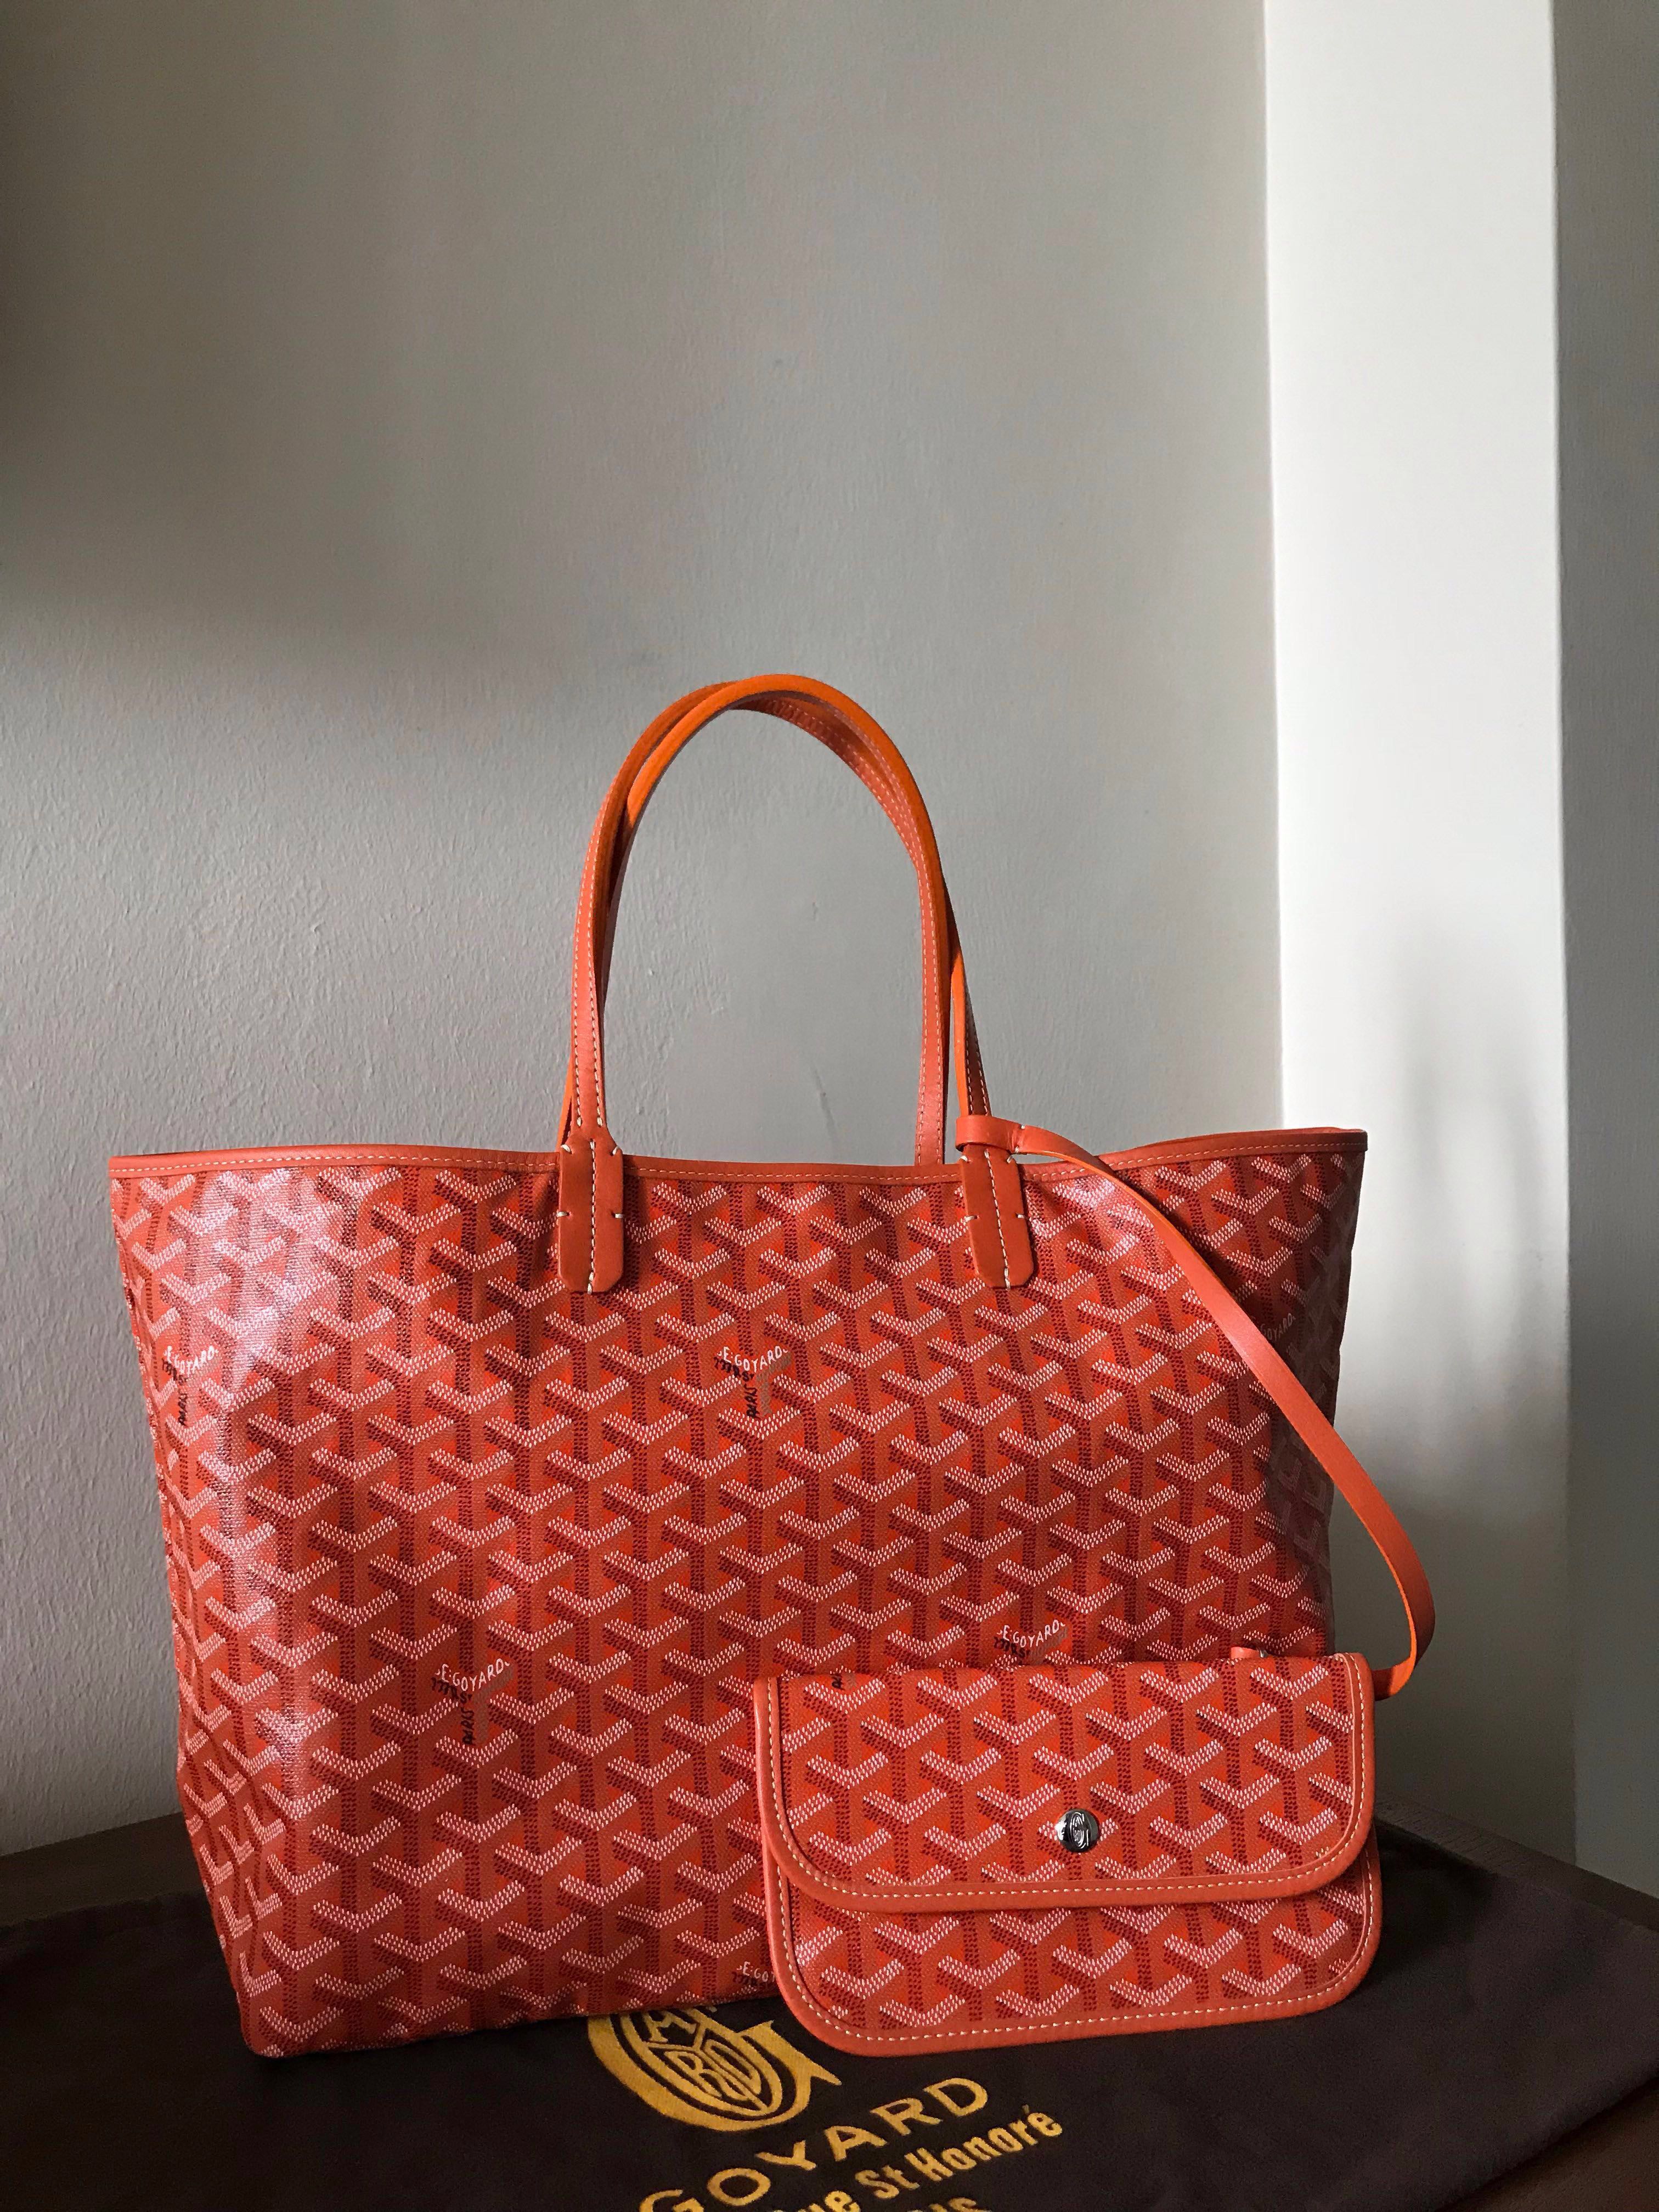 Goyard St. Louis PM Bag in Orange Colour – Luxe Marché India